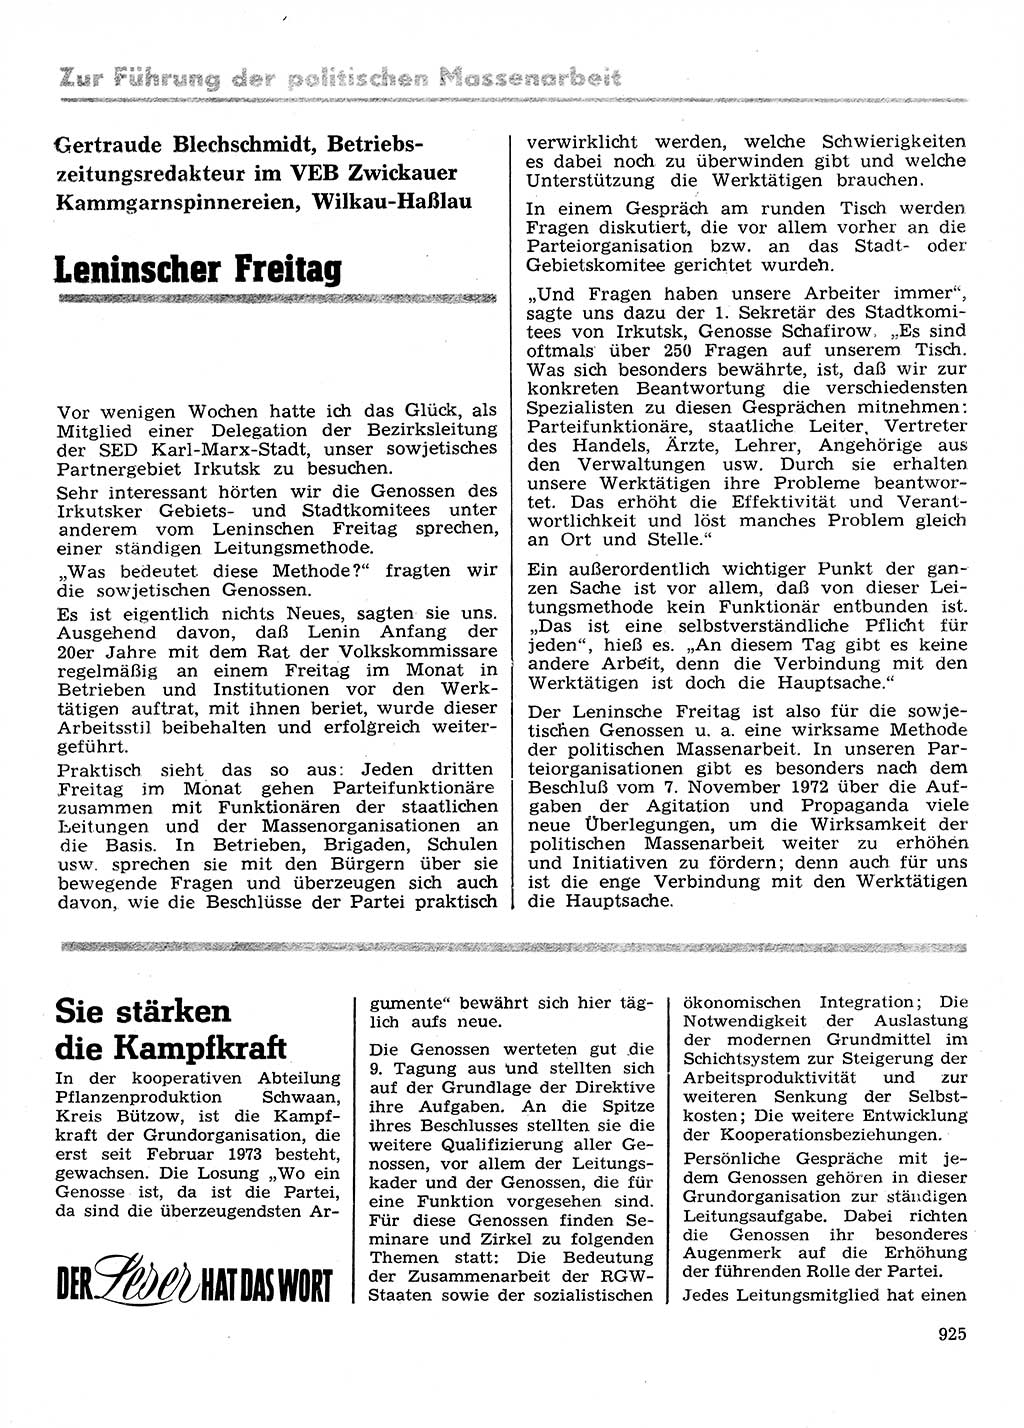 Neuer Weg (NW), Organ des Zentralkomitees (ZK) der SED (Sozialistische Einheitspartei Deutschlands) für Fragen des Parteilebens, 28. Jahrgang [Deutsche Demokratische Republik (DDR)] 1973, Seite 925 (NW ZK SED DDR 1973, S. 925)